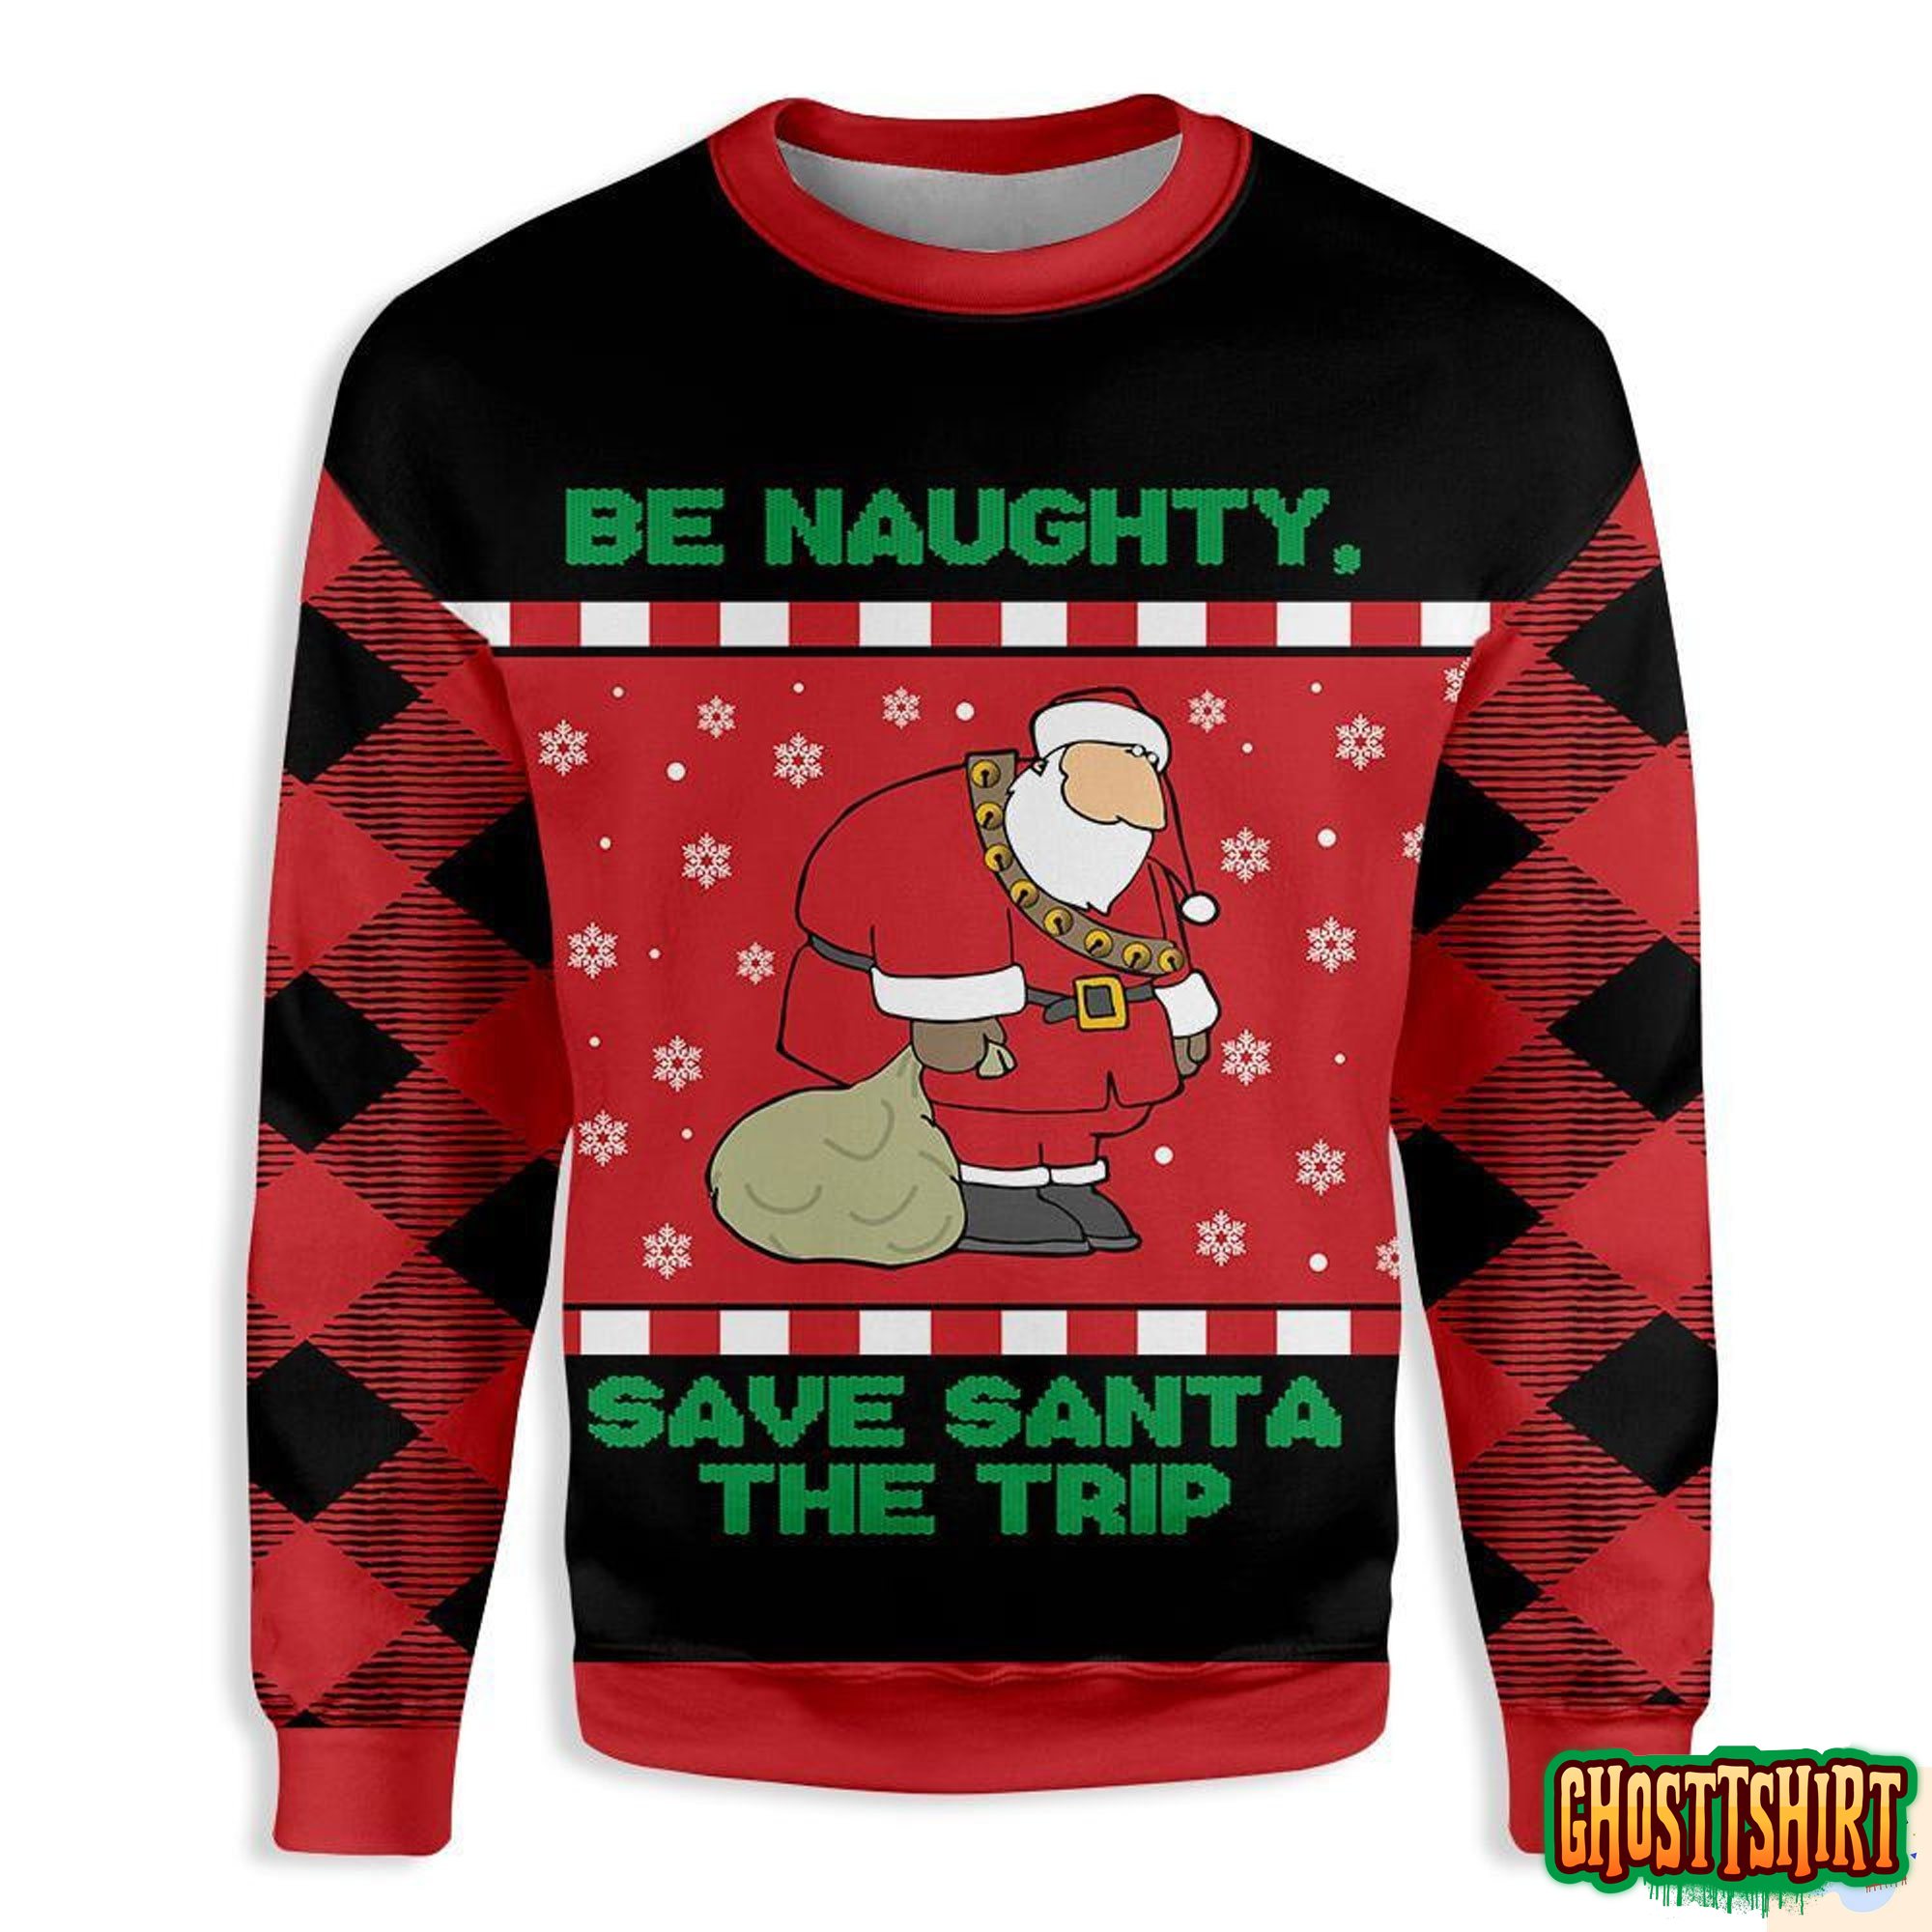 Be Naughty Save Santa The Trip Christmas Ugly Christmas Sweater